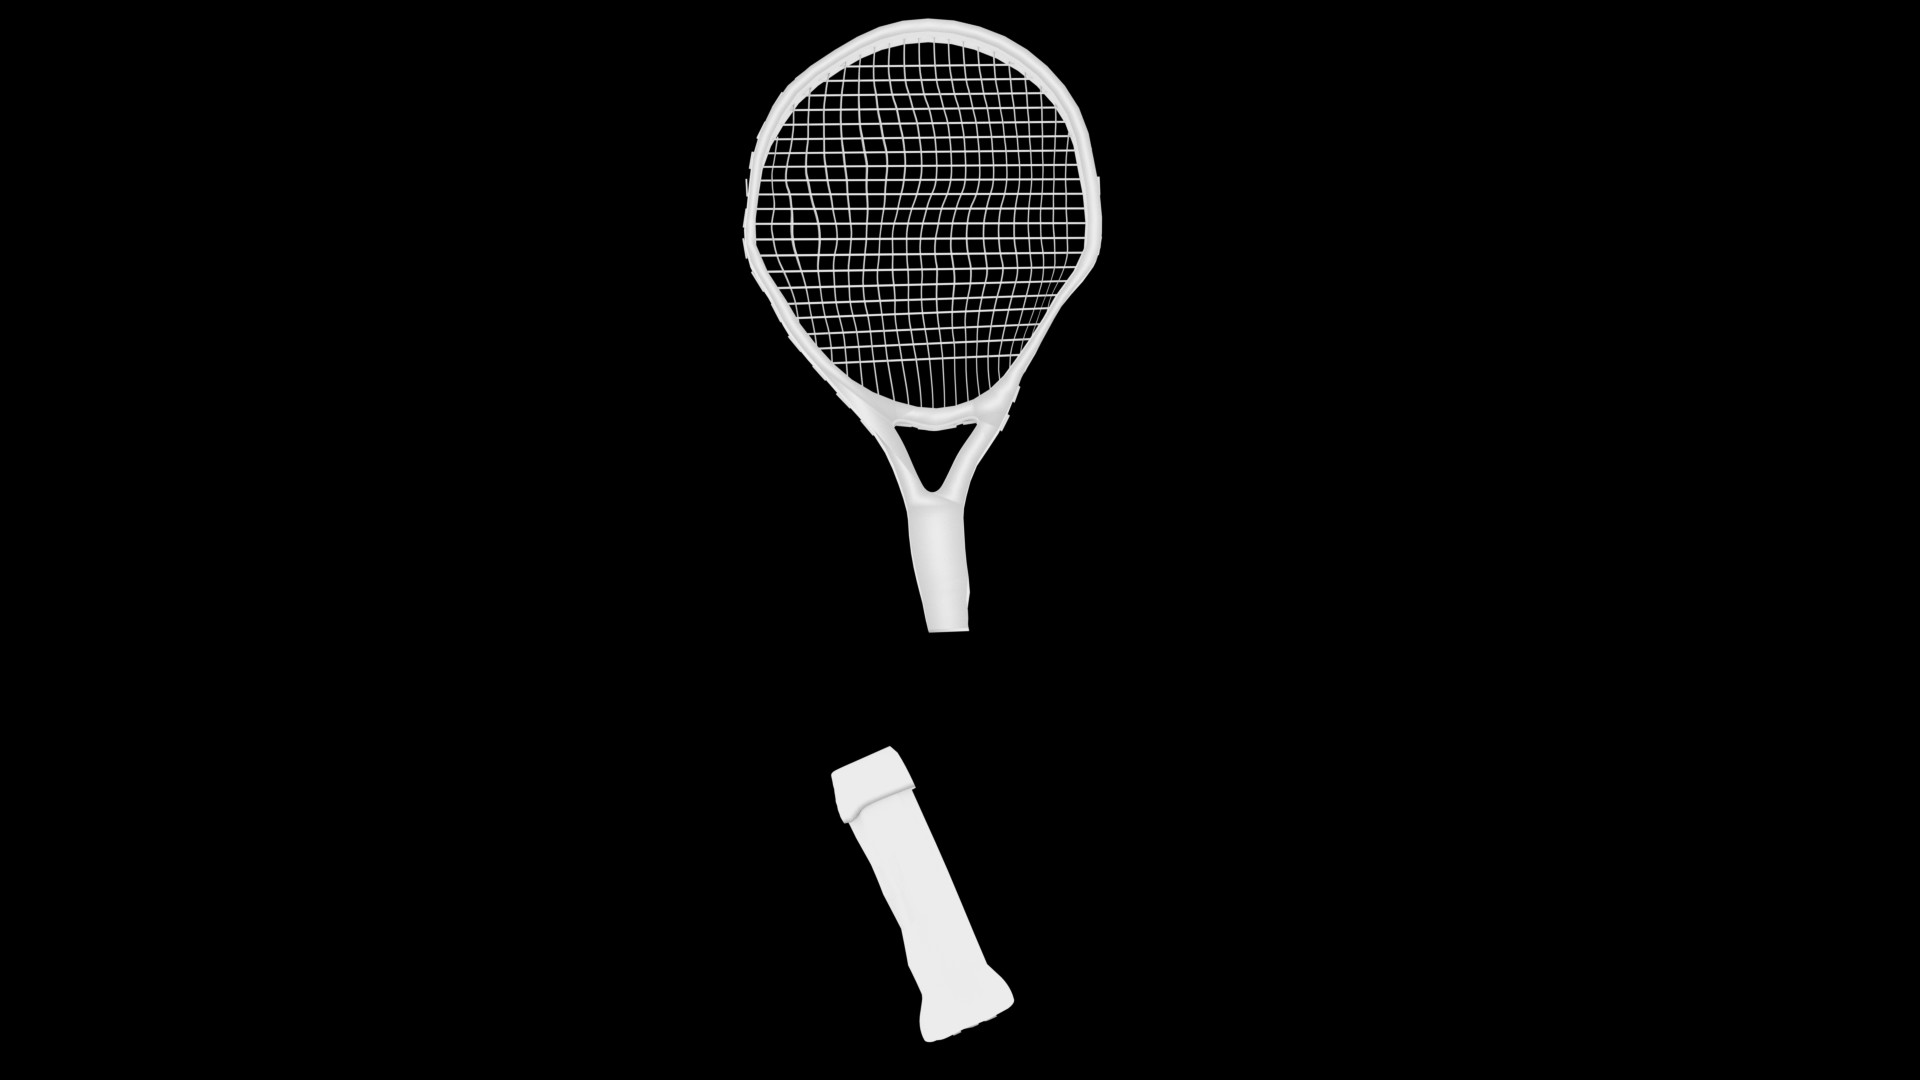 Kırılmış tenis raketi ile tenisçi dirseği için sembol olarak kullanılmış görseli